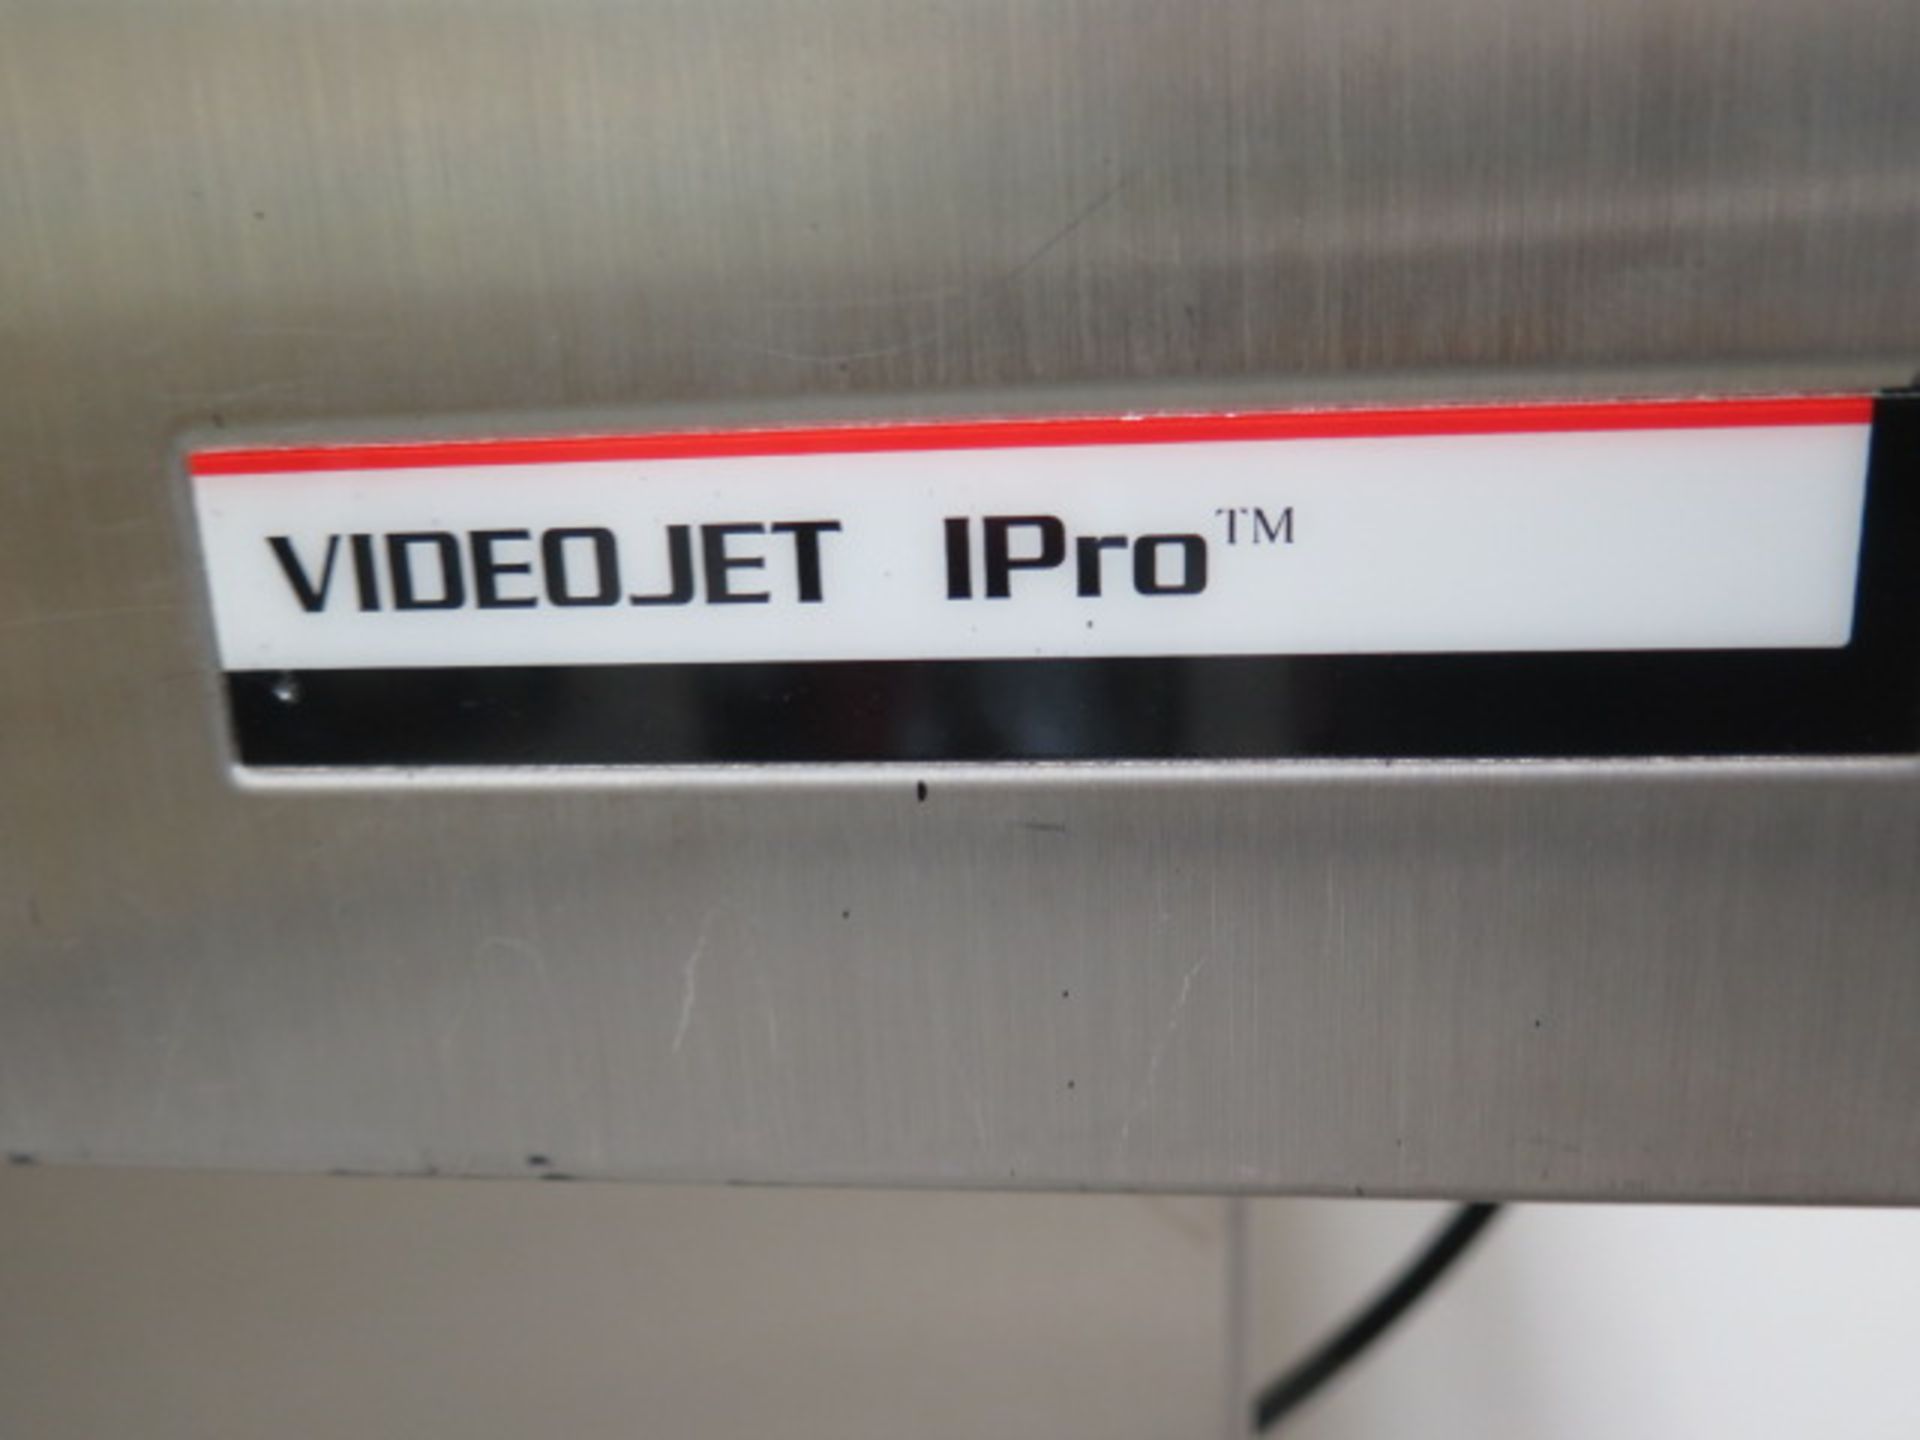 Videojet I-PRO Ink Jet Marking Machine s/n 053361048WD w/ Rolling Base (SOLD AS-IS - NO WARRANTY) - Image 9 of 10